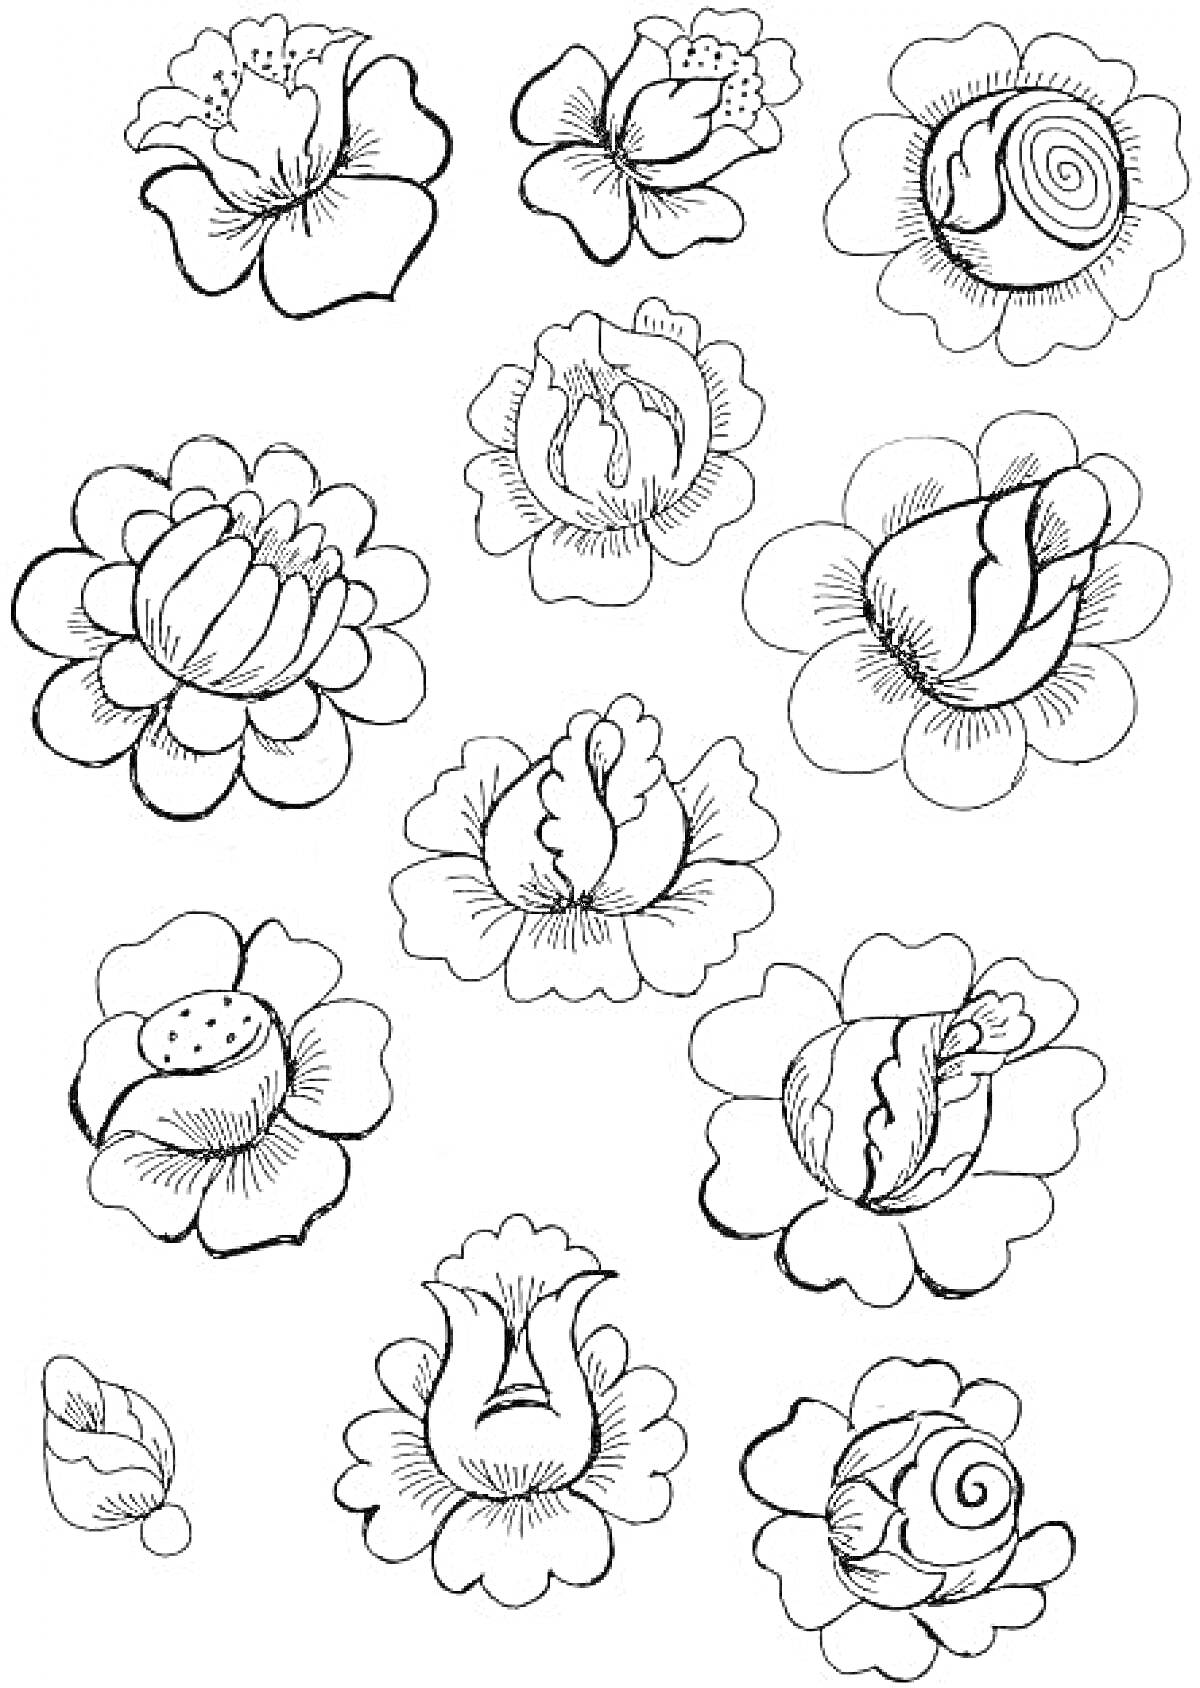 Раскраска Жостовские цветы - бутоны и полураскрытые цветы с листьями